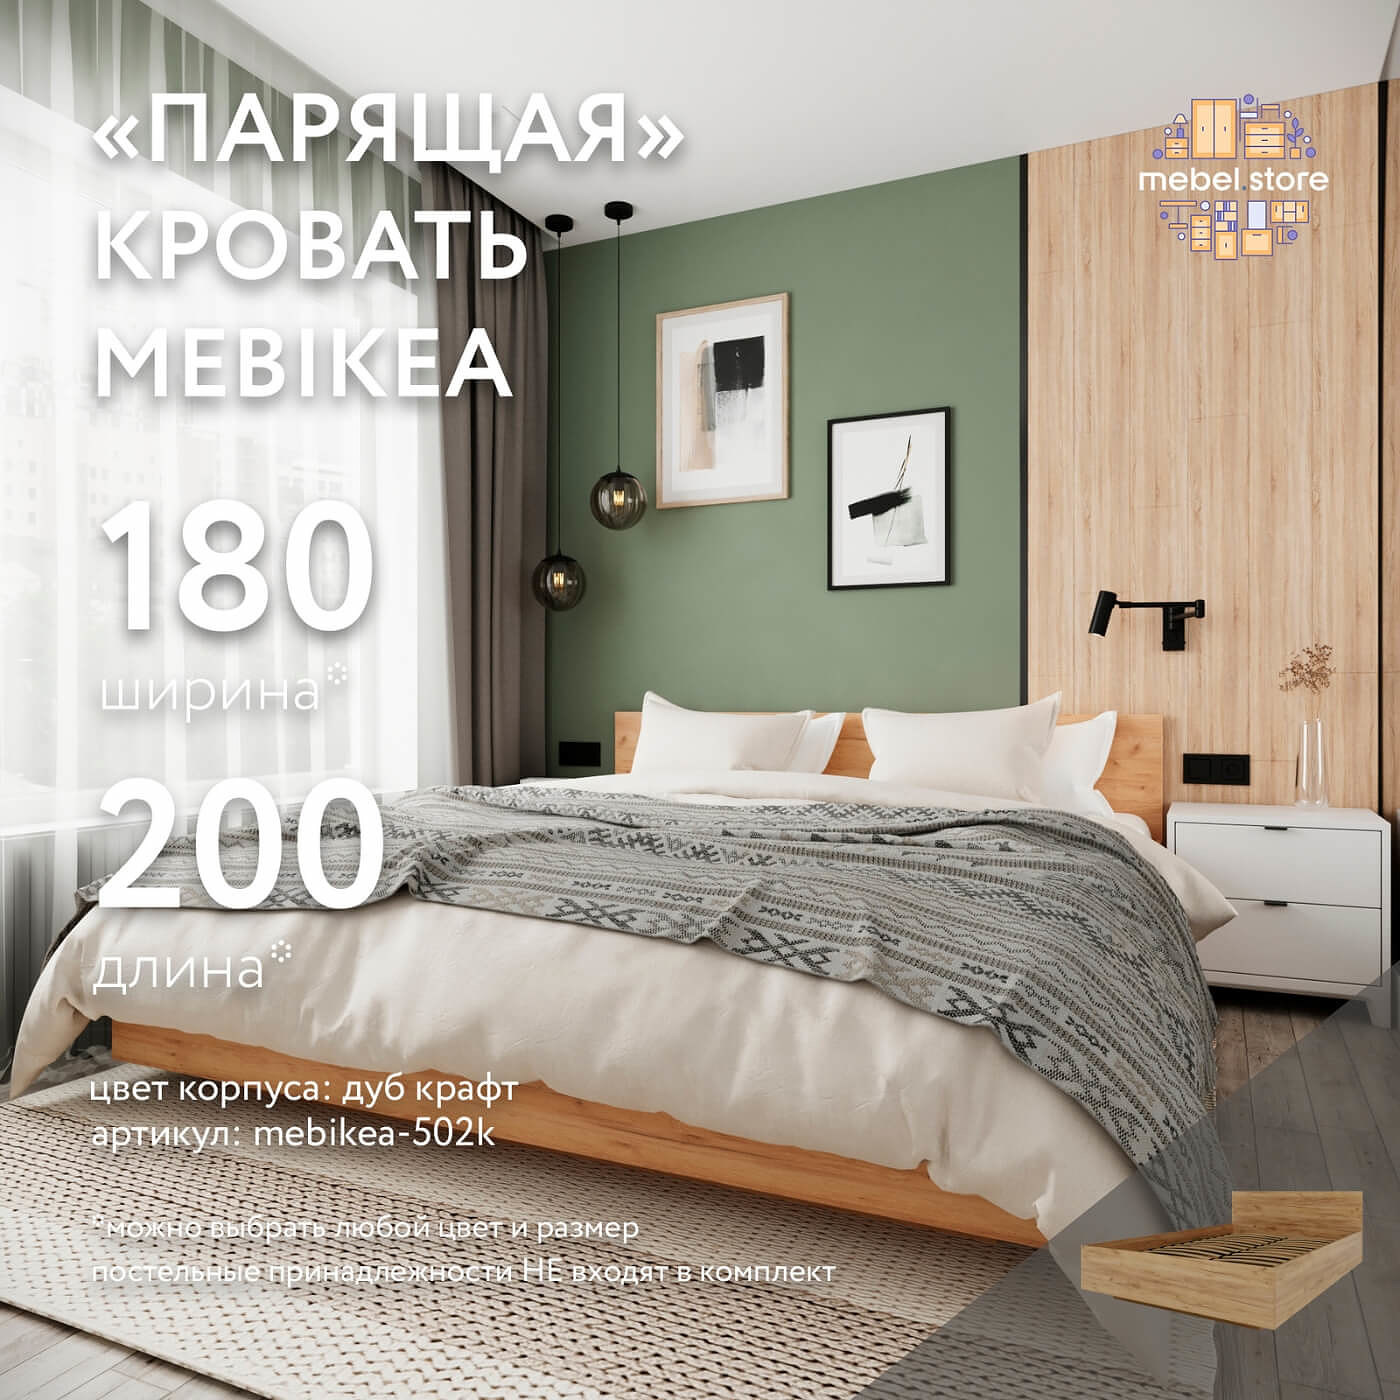 Кровать Mebikea-502k двуспальная минимализм - фото 1 large